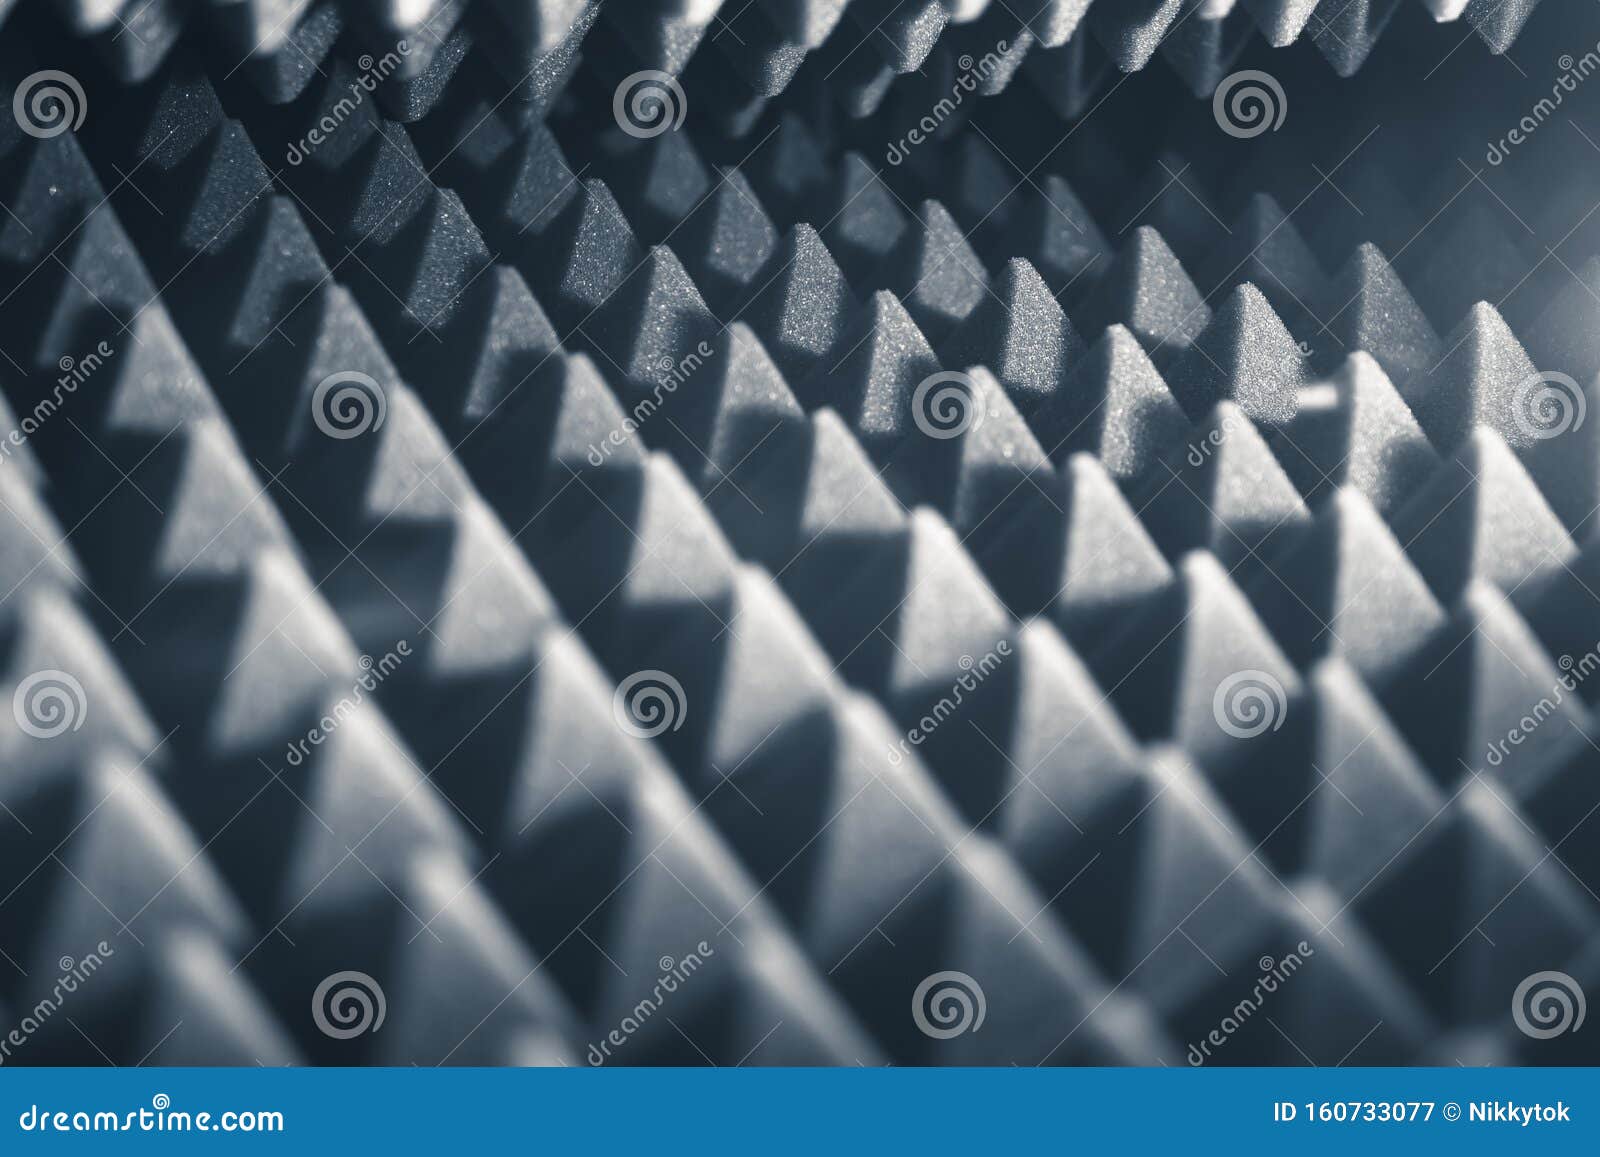 Mousse acoustique Pyramide